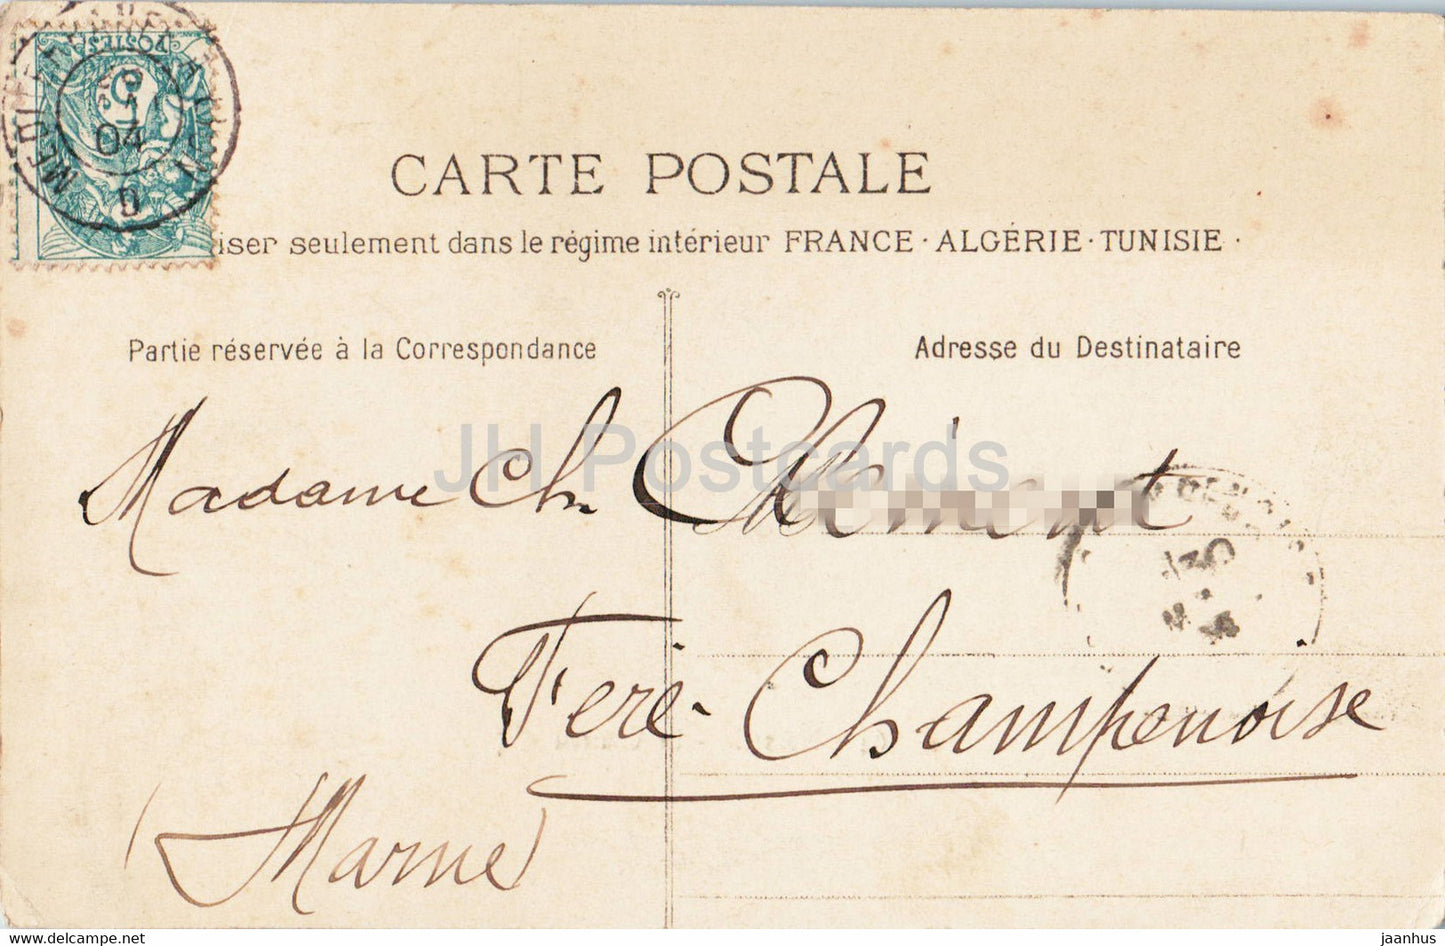 Marseille - Le Château d'If - 64 - carte postale ancienne - 1904 - France - oblitéré